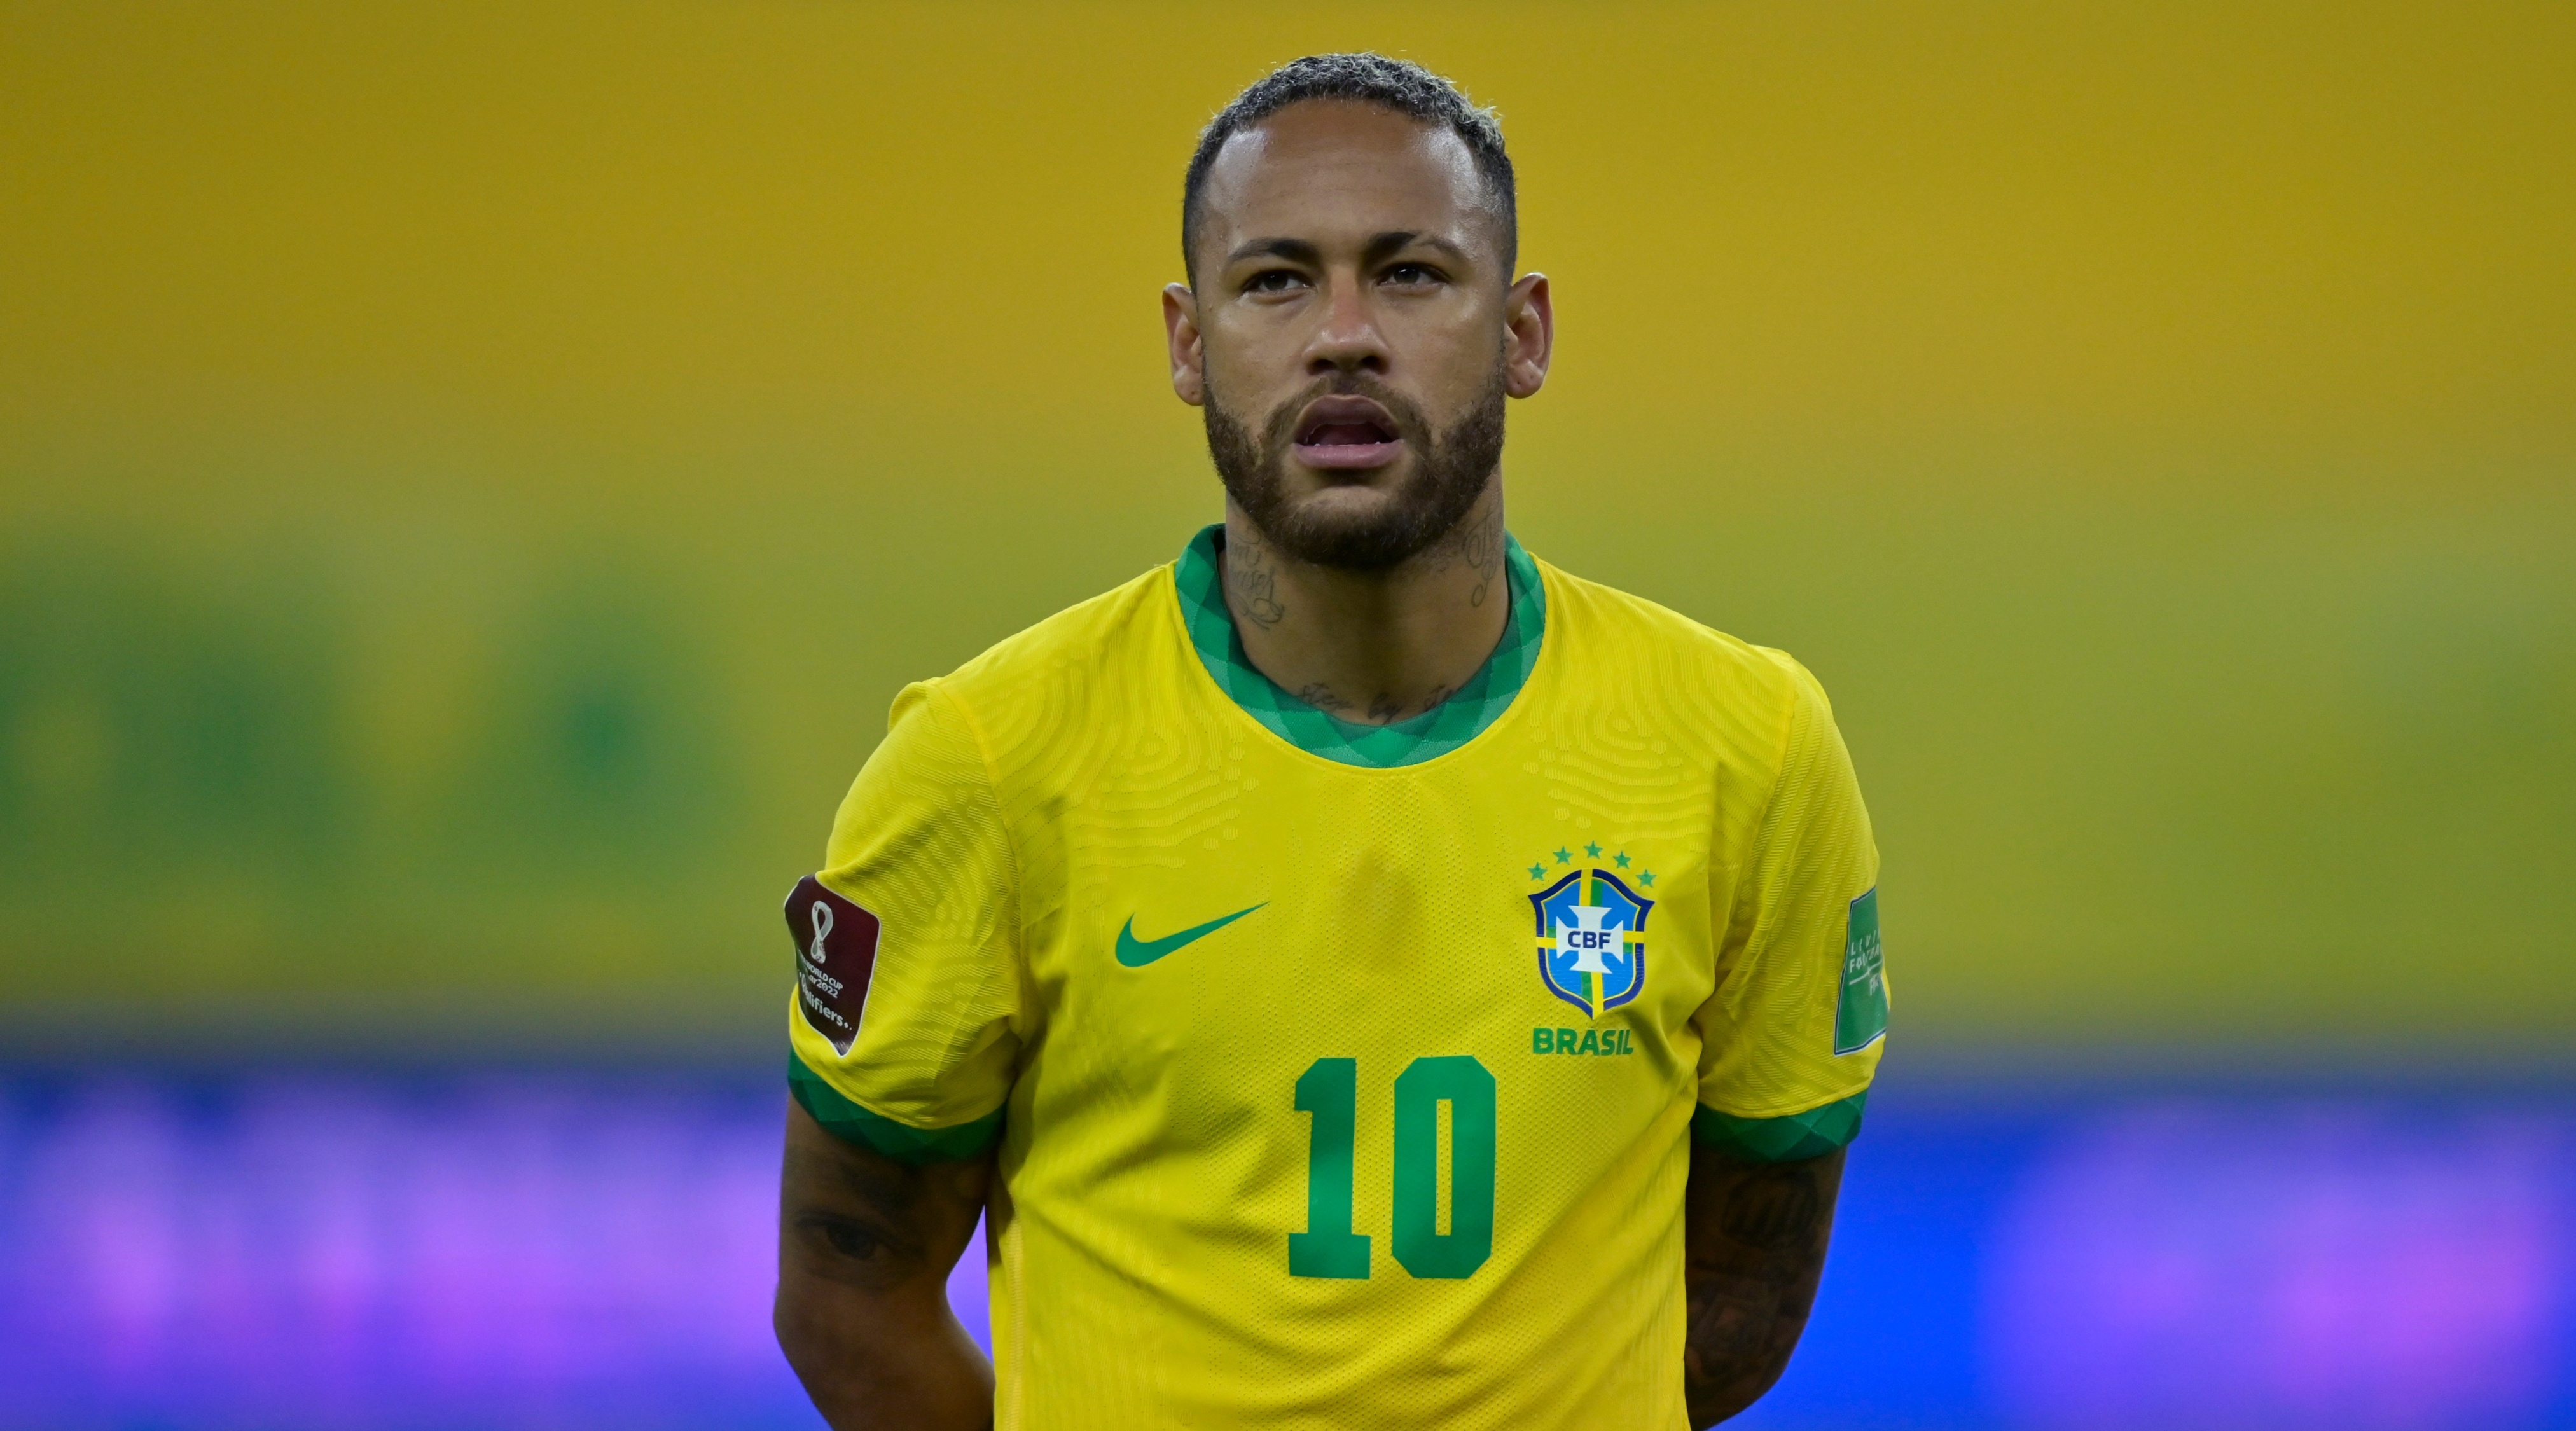 نيمار جونيور من البرازيل ينظر قبل ذلك خلال مباراة بين البرازيل وبيرو كجزء من تصفيات أمريكا الجنوبية لقطر 2022 في أرينا بيرنامبوكو في 9 سبتمبر 2021 في ريسيفي ، البرازيل.